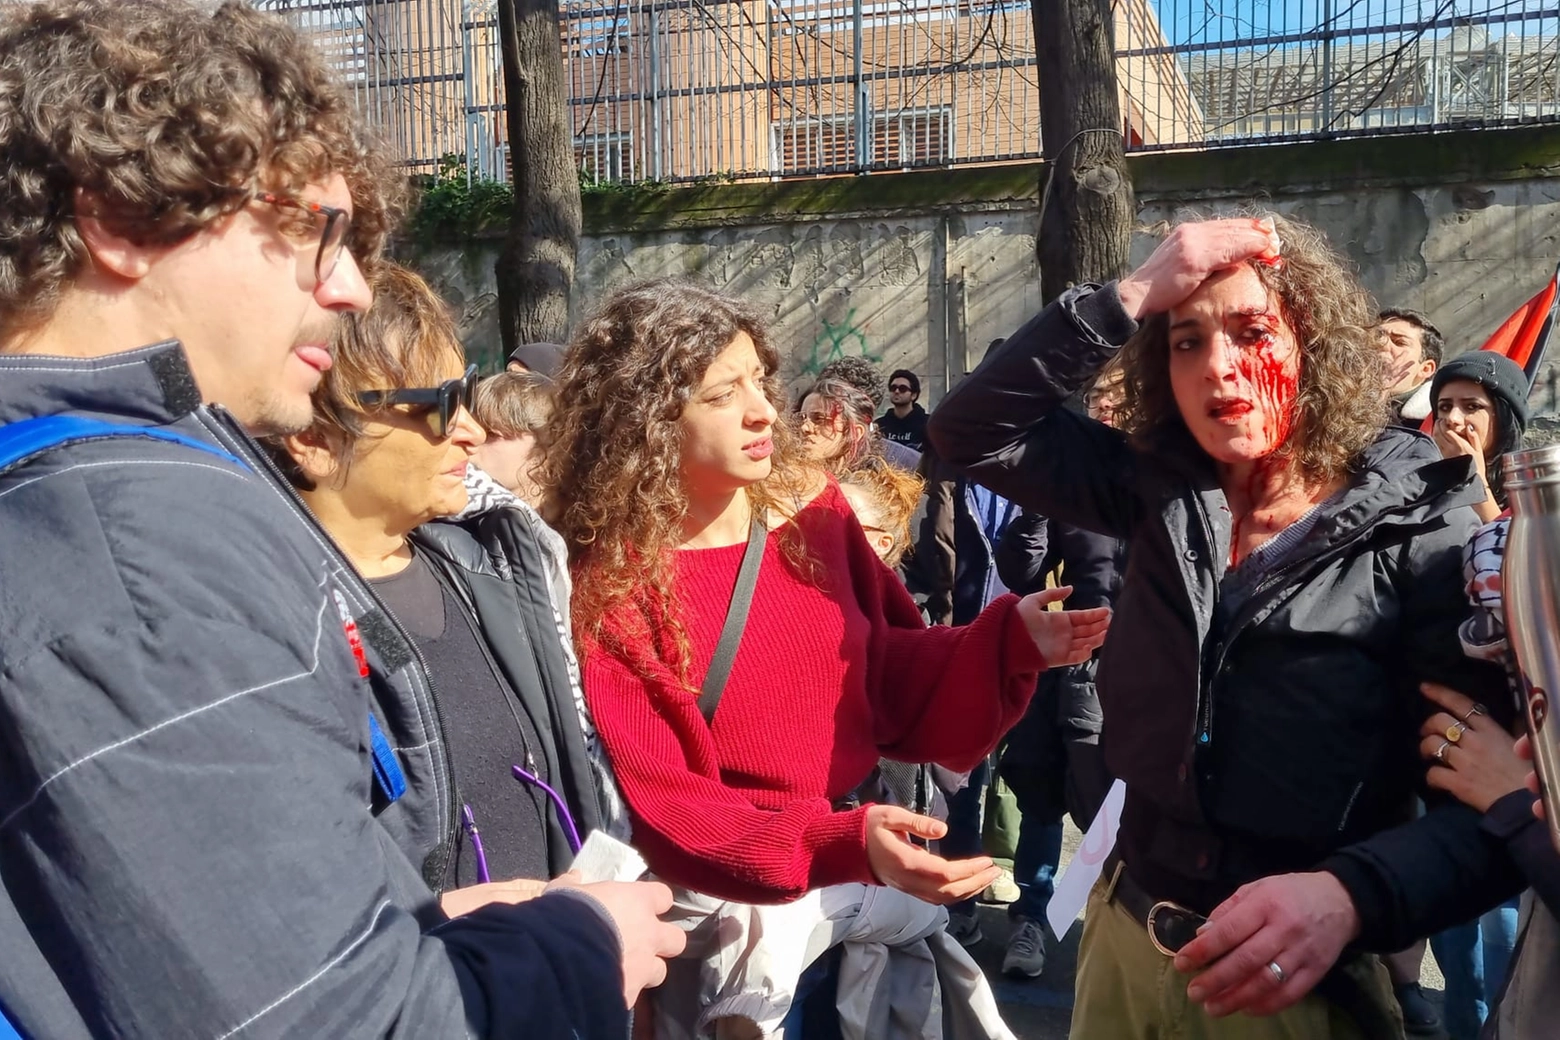 Una manifestante ferita dopo gli scontri davanti alla sede Rai di Napoli (Dire)